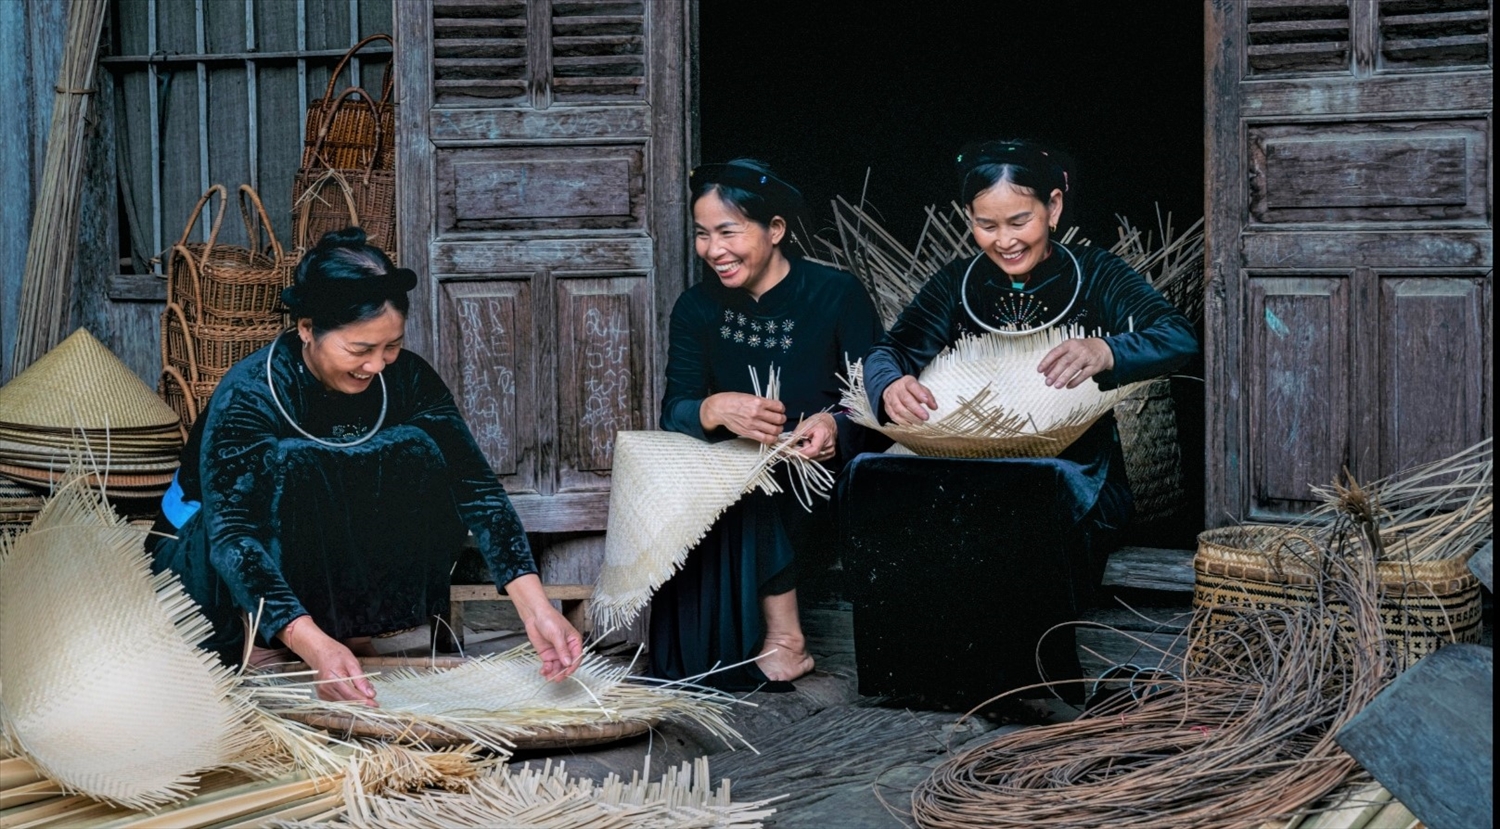 Chị Ma Thị Liễu (bên phải) cùng chị em trong tổ hợp tác làm sản phẩm mây tre đan.